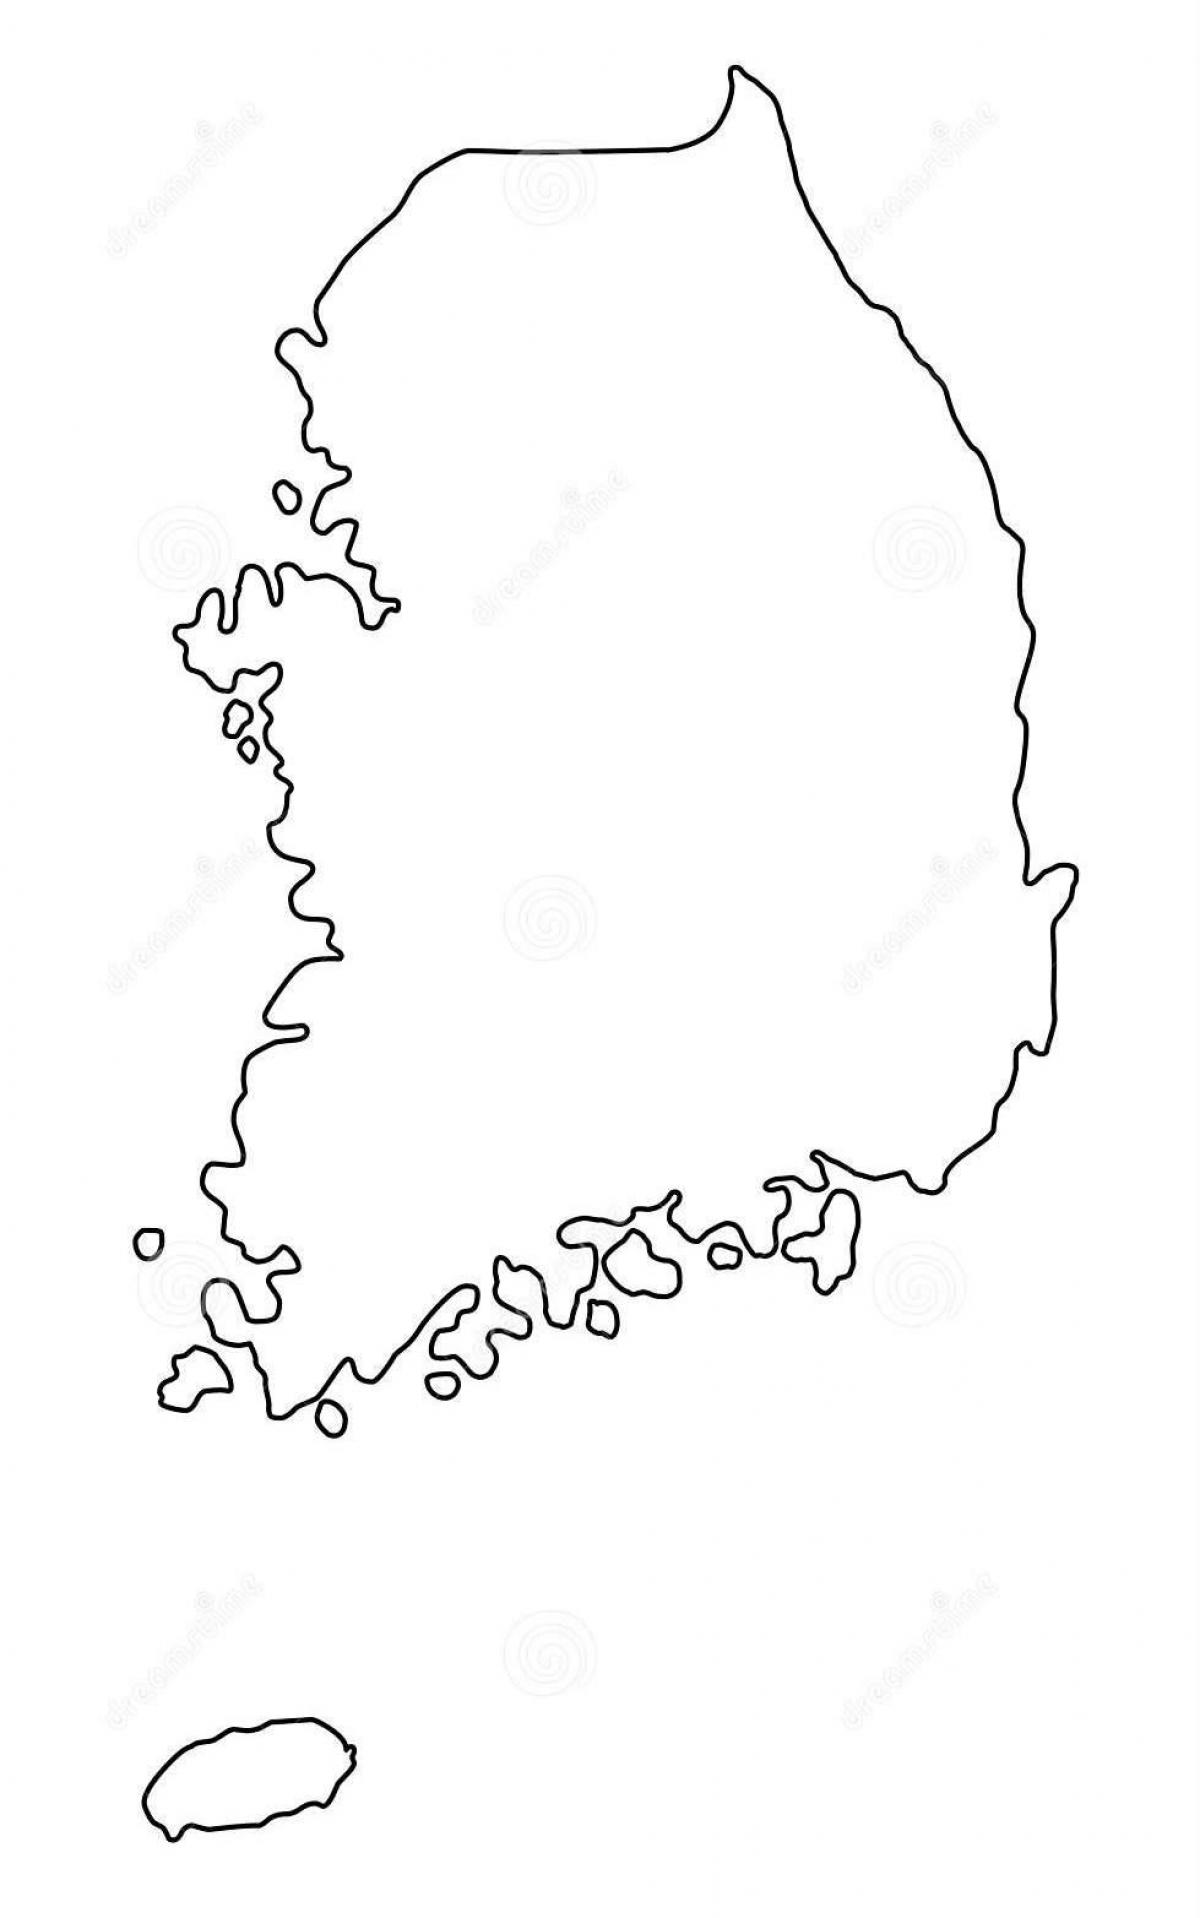 Mapa de contornos de Corea del Sur (ROK)